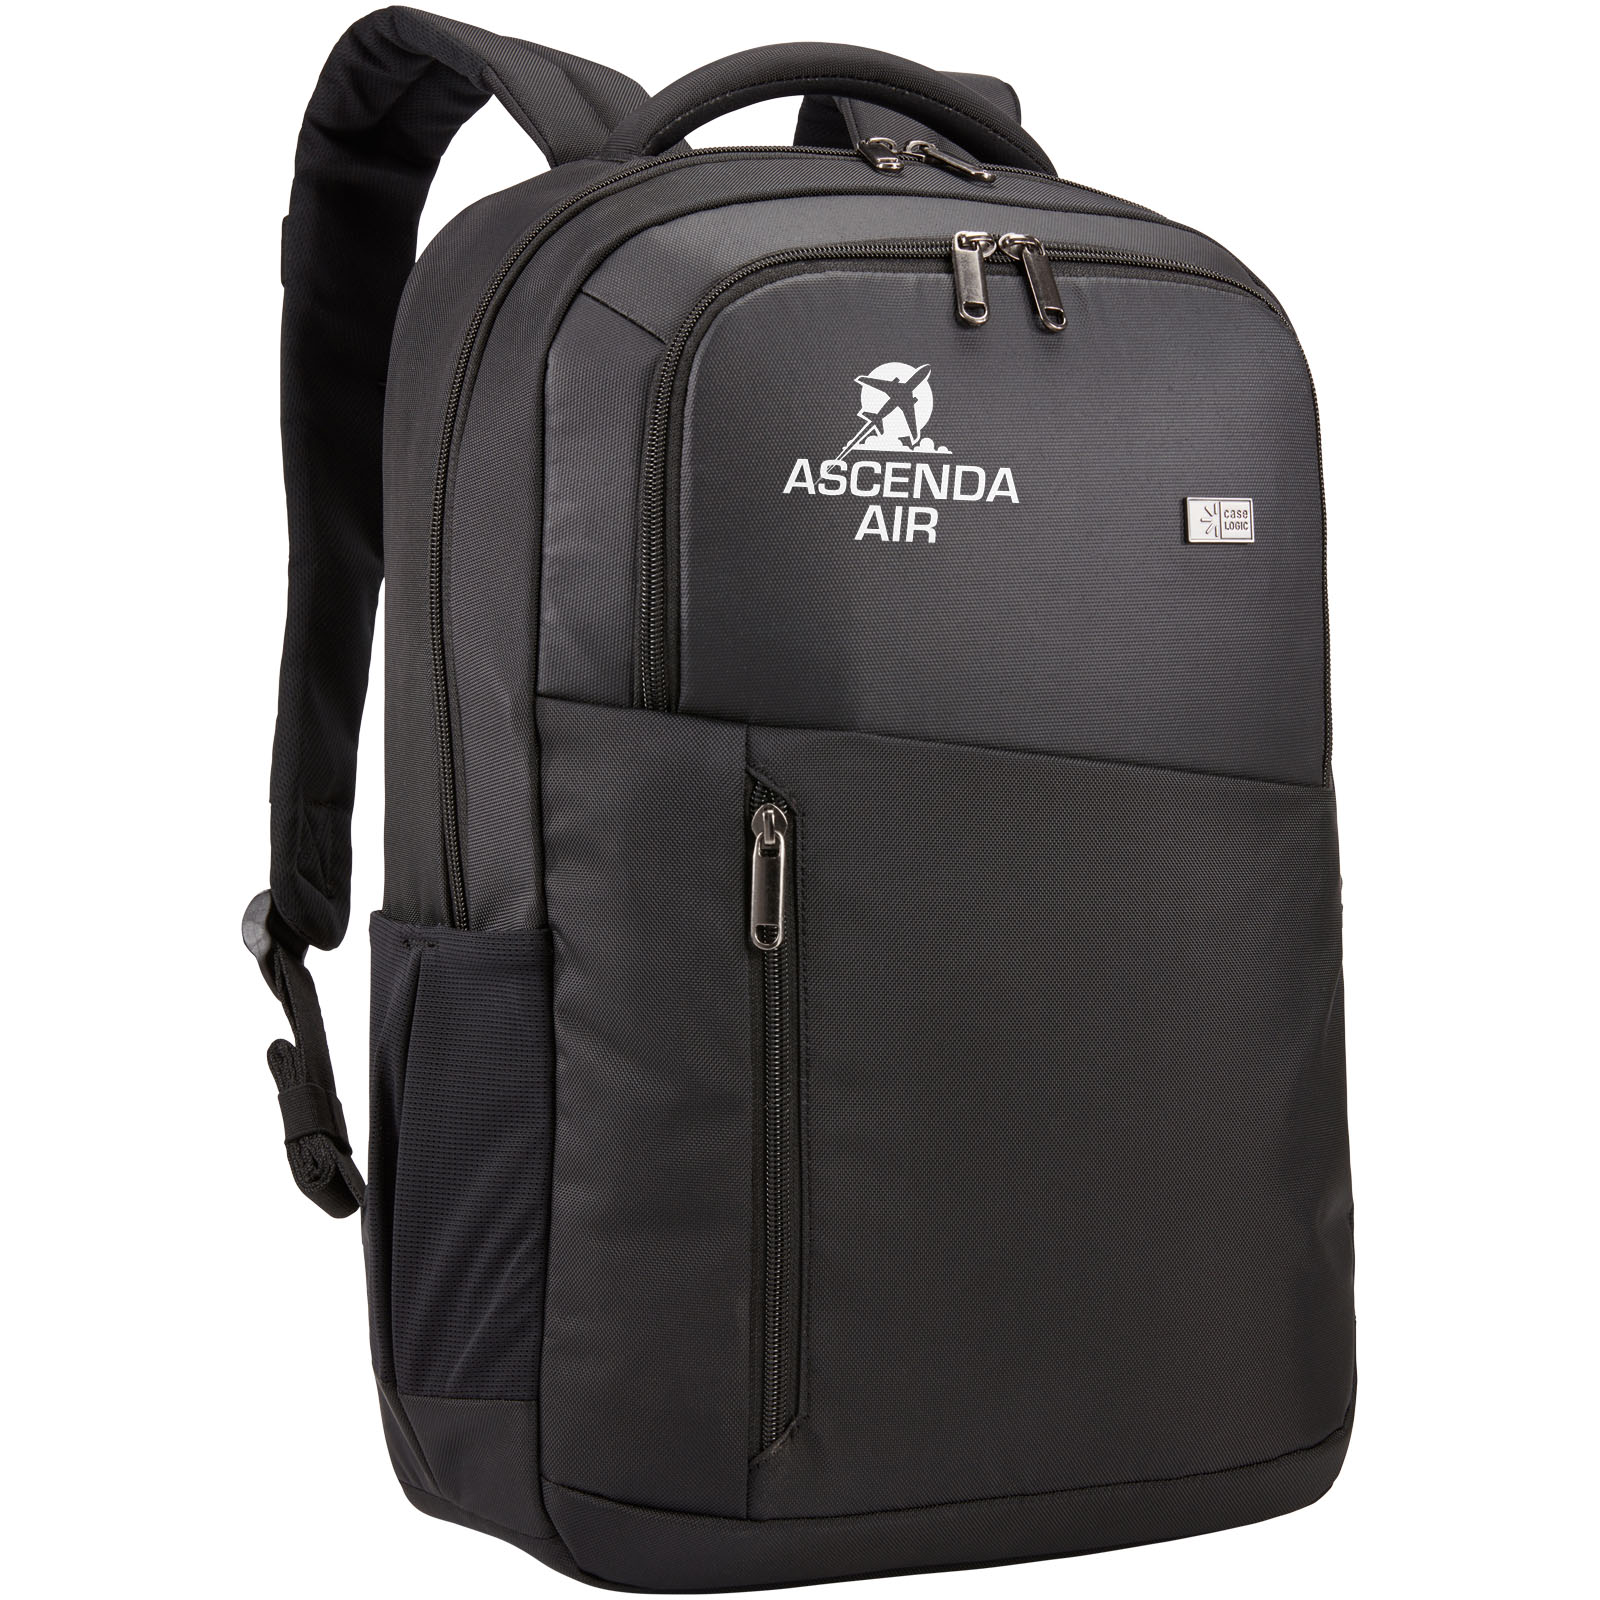 Case Logic Propel 15.6" laptop backpack 20L